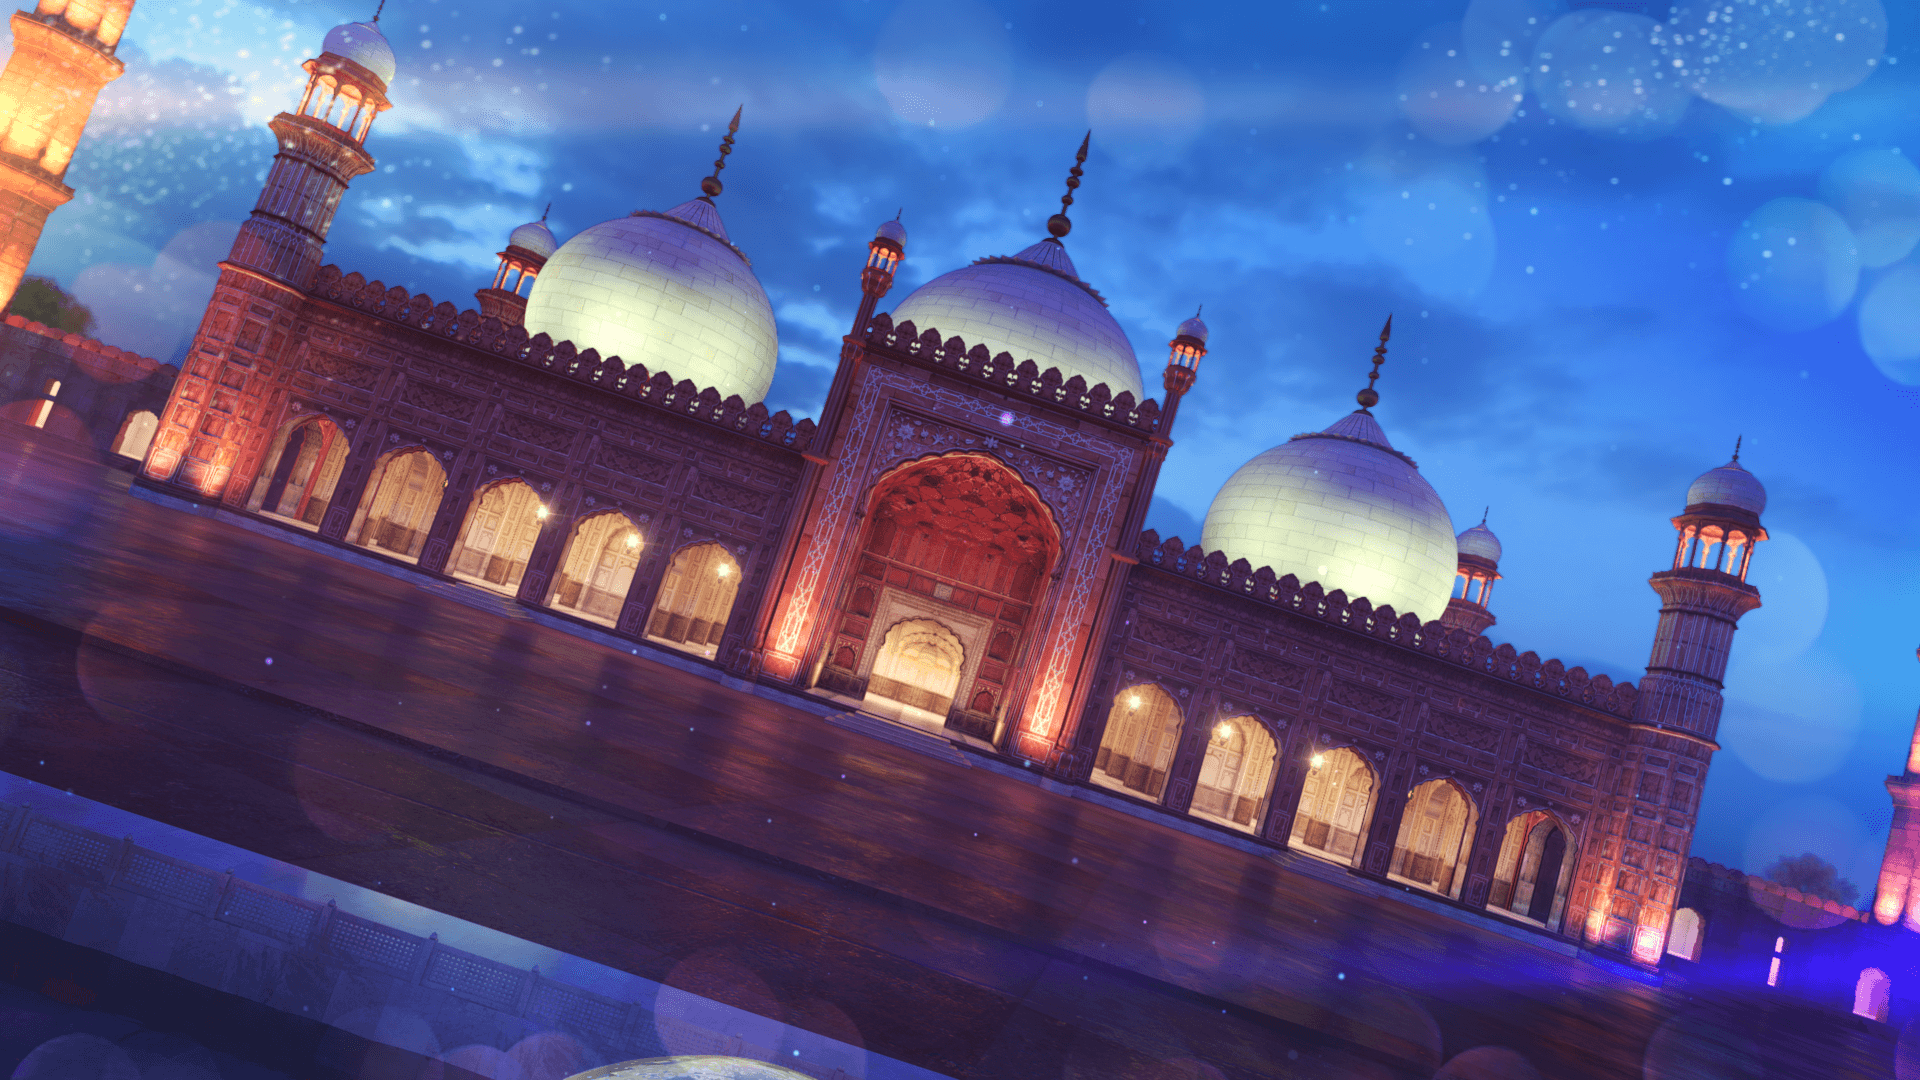 badshahi mosque architecture